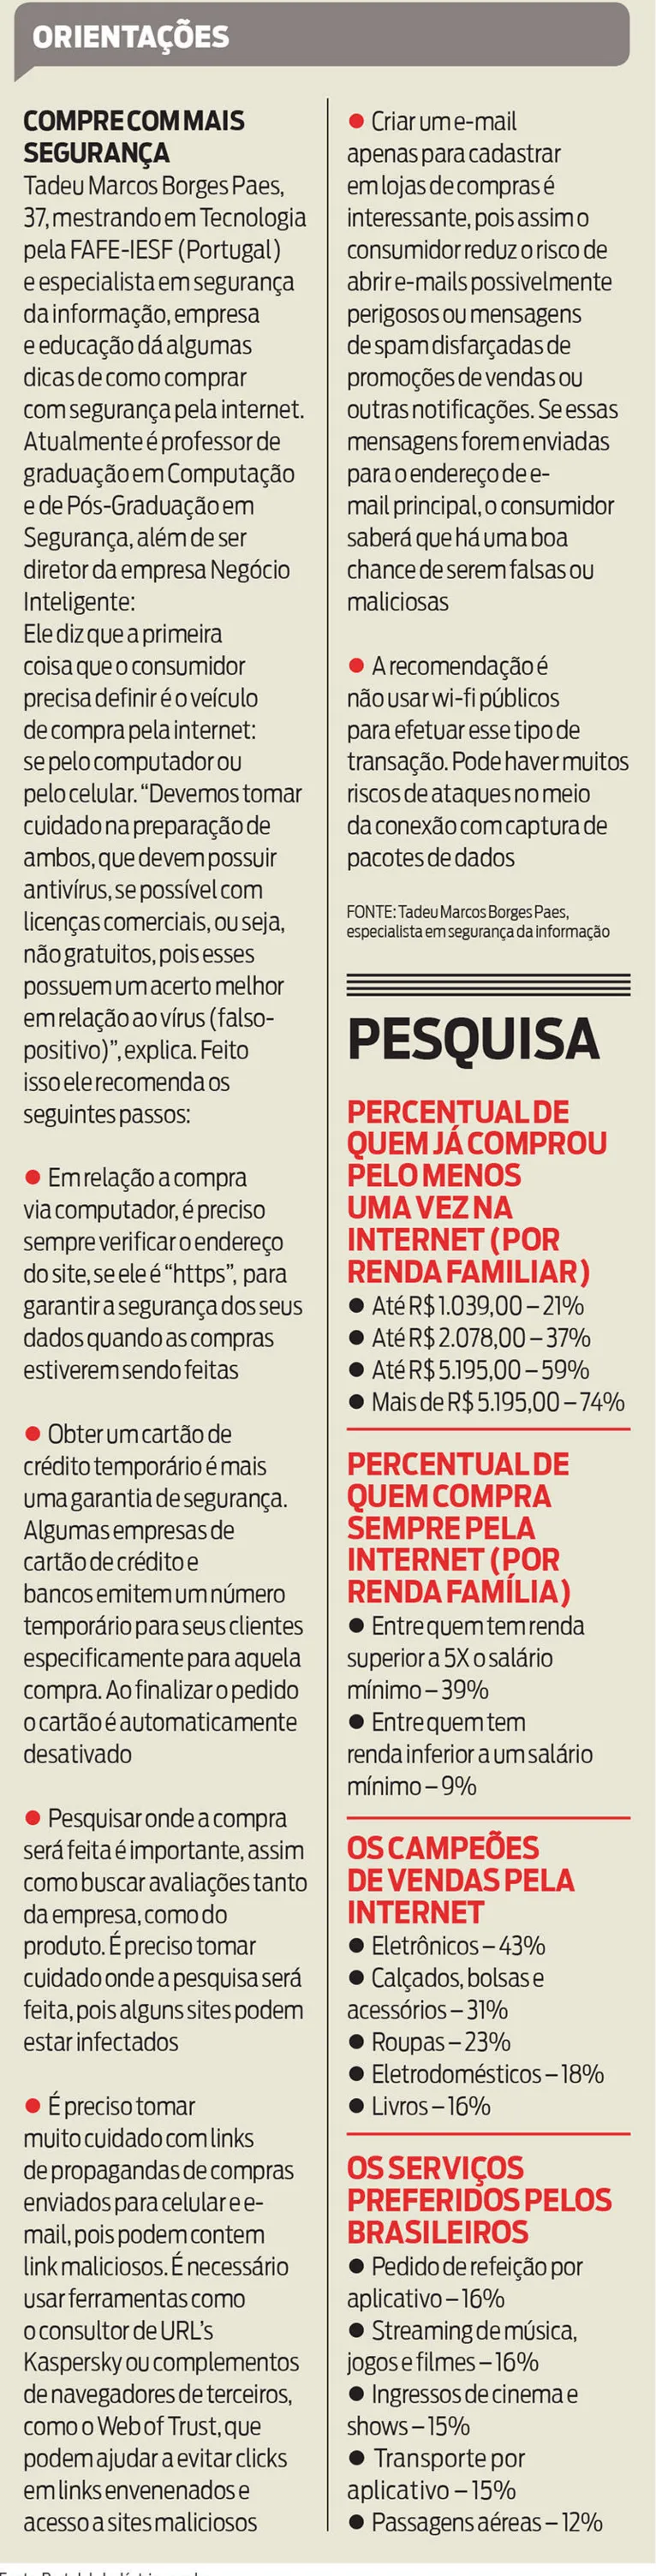 Segundo pesquisa, compras pela internet disparam entre os brasileiros